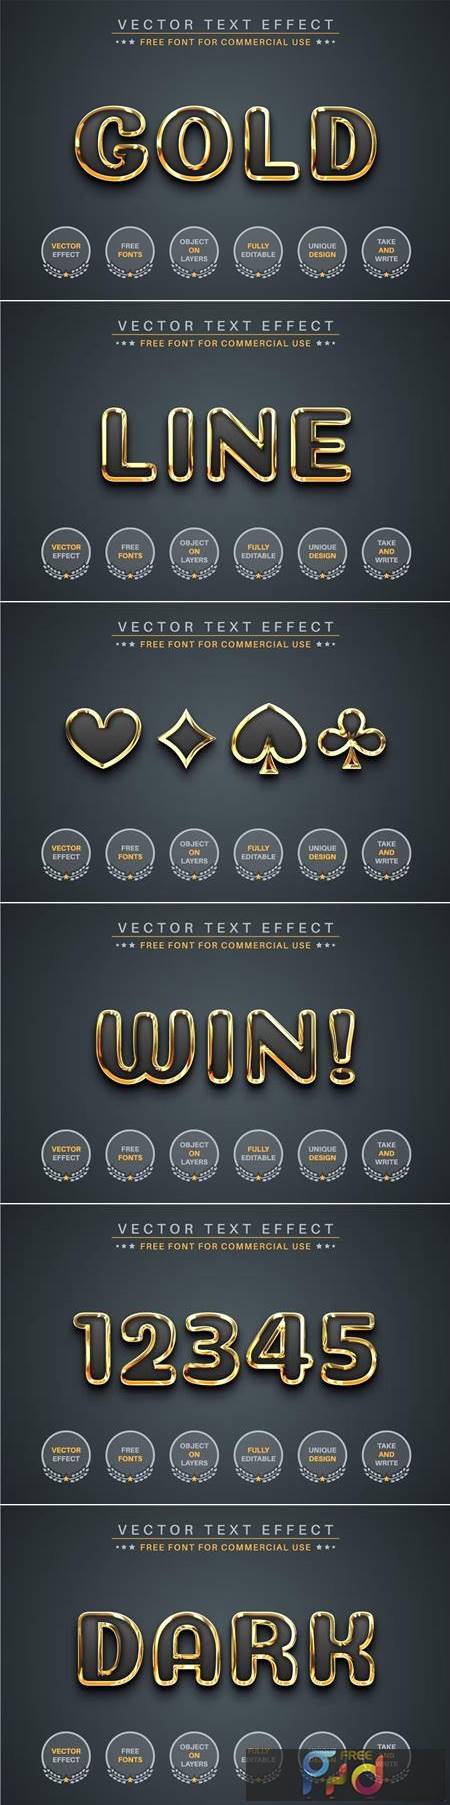 Dark Gold - Editable Text Effect, Font Style VAWXJ9J 1